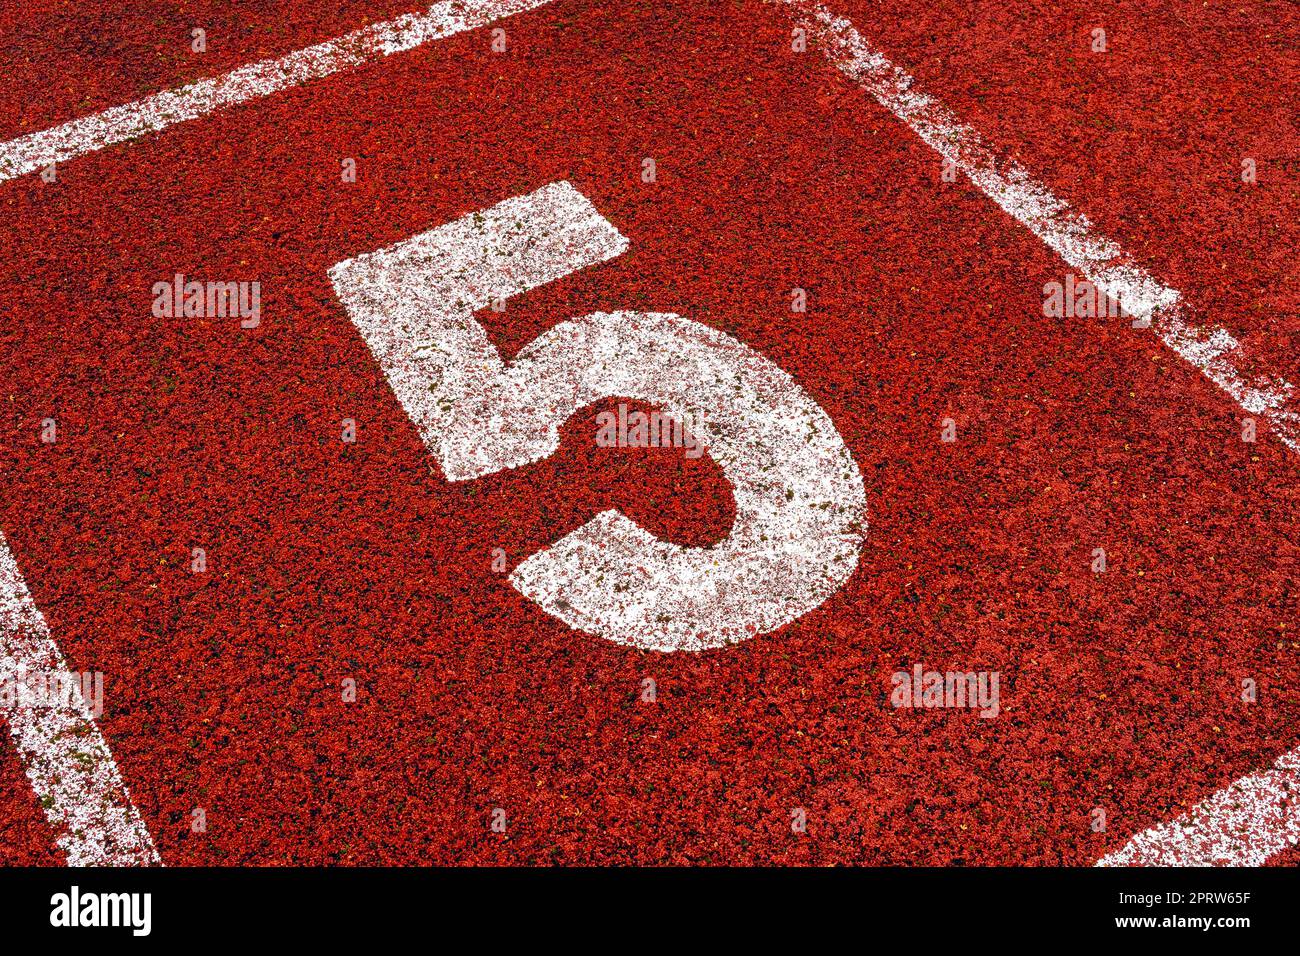 Die Zahl 5 am Startpunkt der Laufstrecke oder der Sportstrecke im Stadion Stockfoto